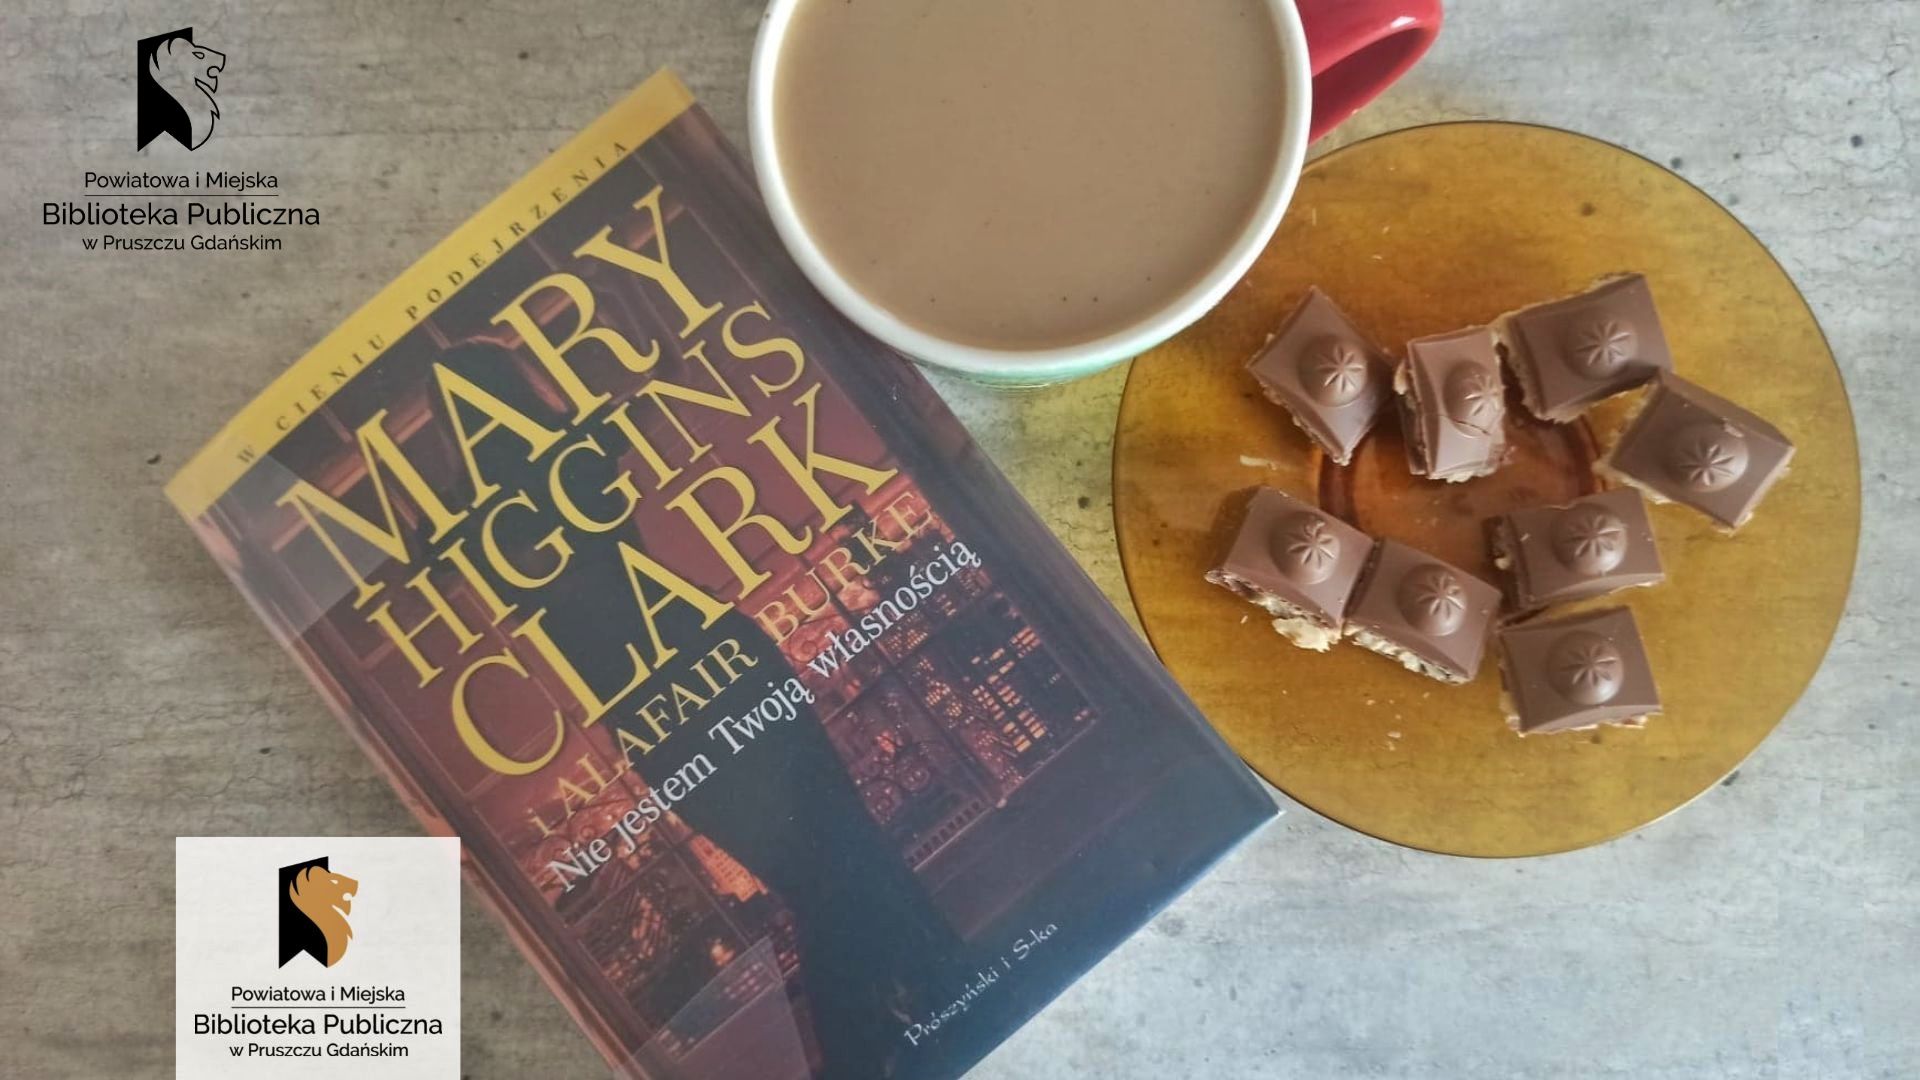 Książka Mary Higgins Clark pt. Nie jestem Twoją własnością. Z prawej strony filiżanką z kawą oraz talerzyk z kostkami czekolady.